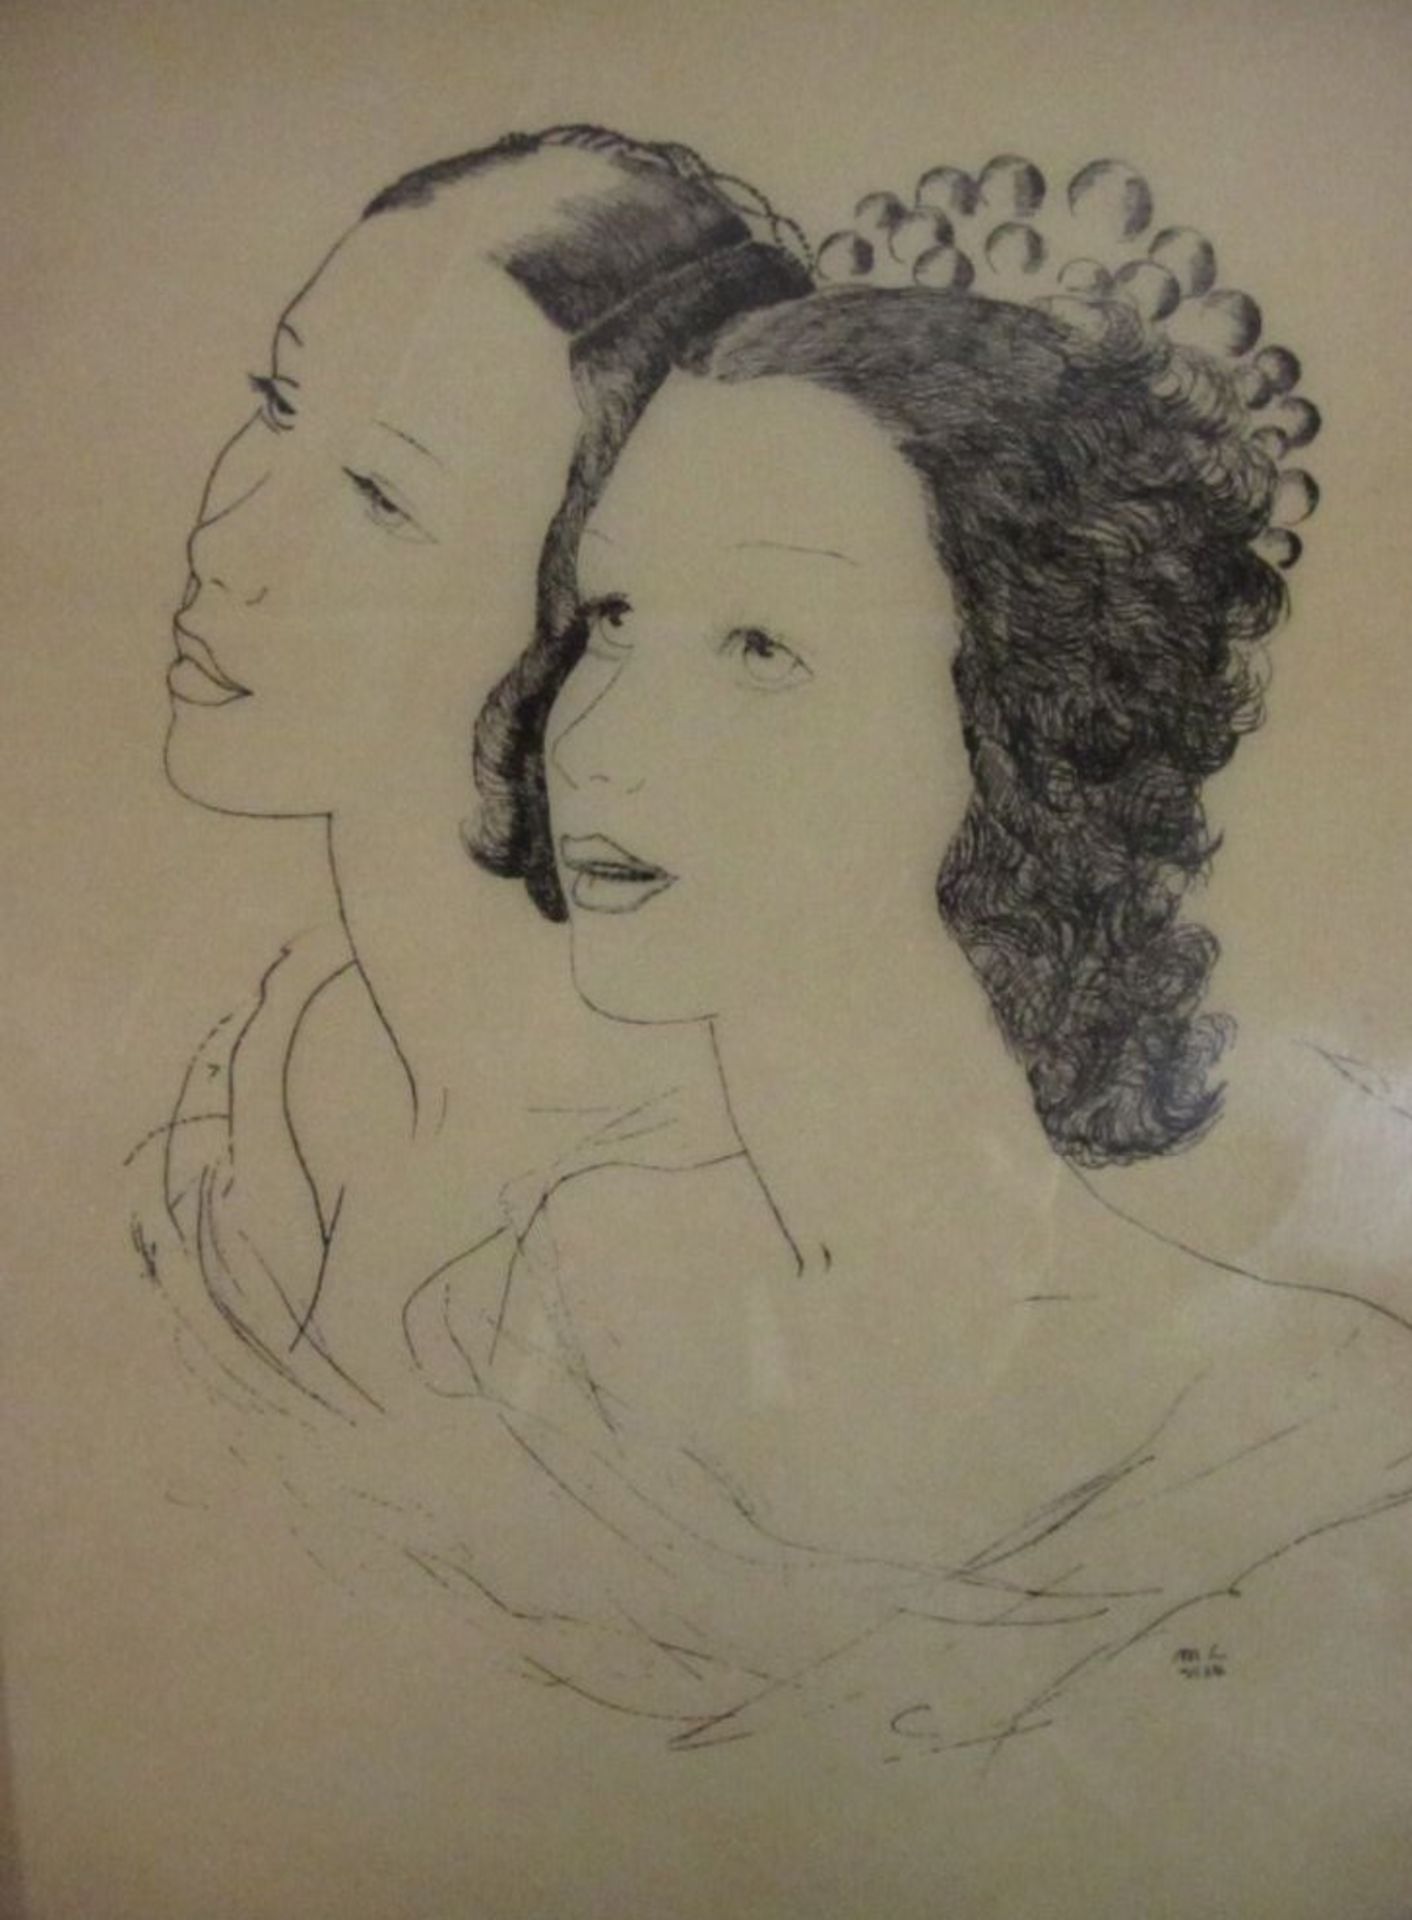 doppel Portrait wohl Zeichnung/Skizze, monogrammiert M.L. 1934 (Max LIEBERMANN (Attrib.) (1847-